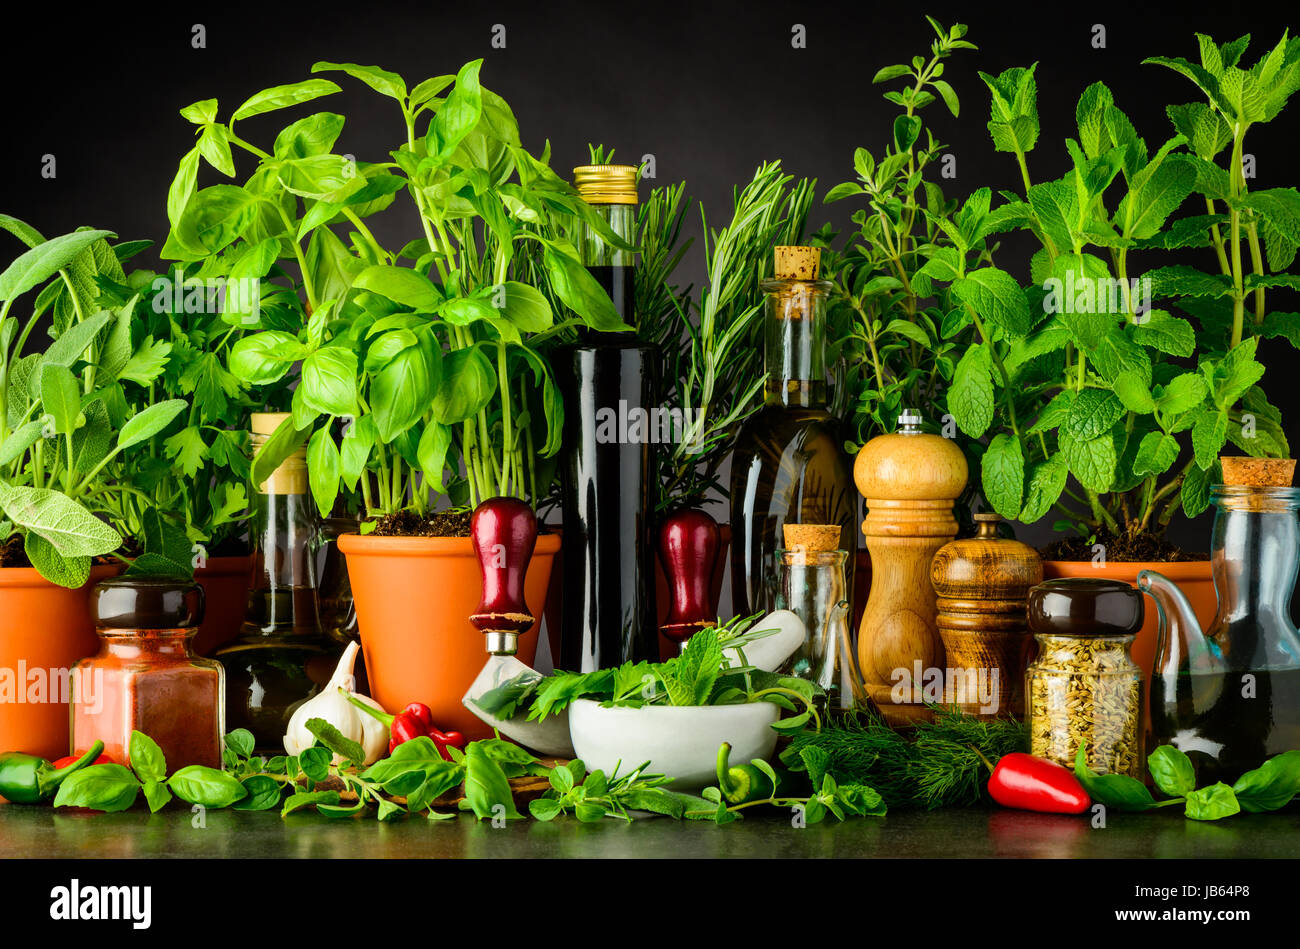 La vie de bas avec des ingrédients, basilic et persil frais vert herbes, Pilon et mortier avec des ustensiles de cuisine broyeur herbe Mezzaluna Banque D'Images